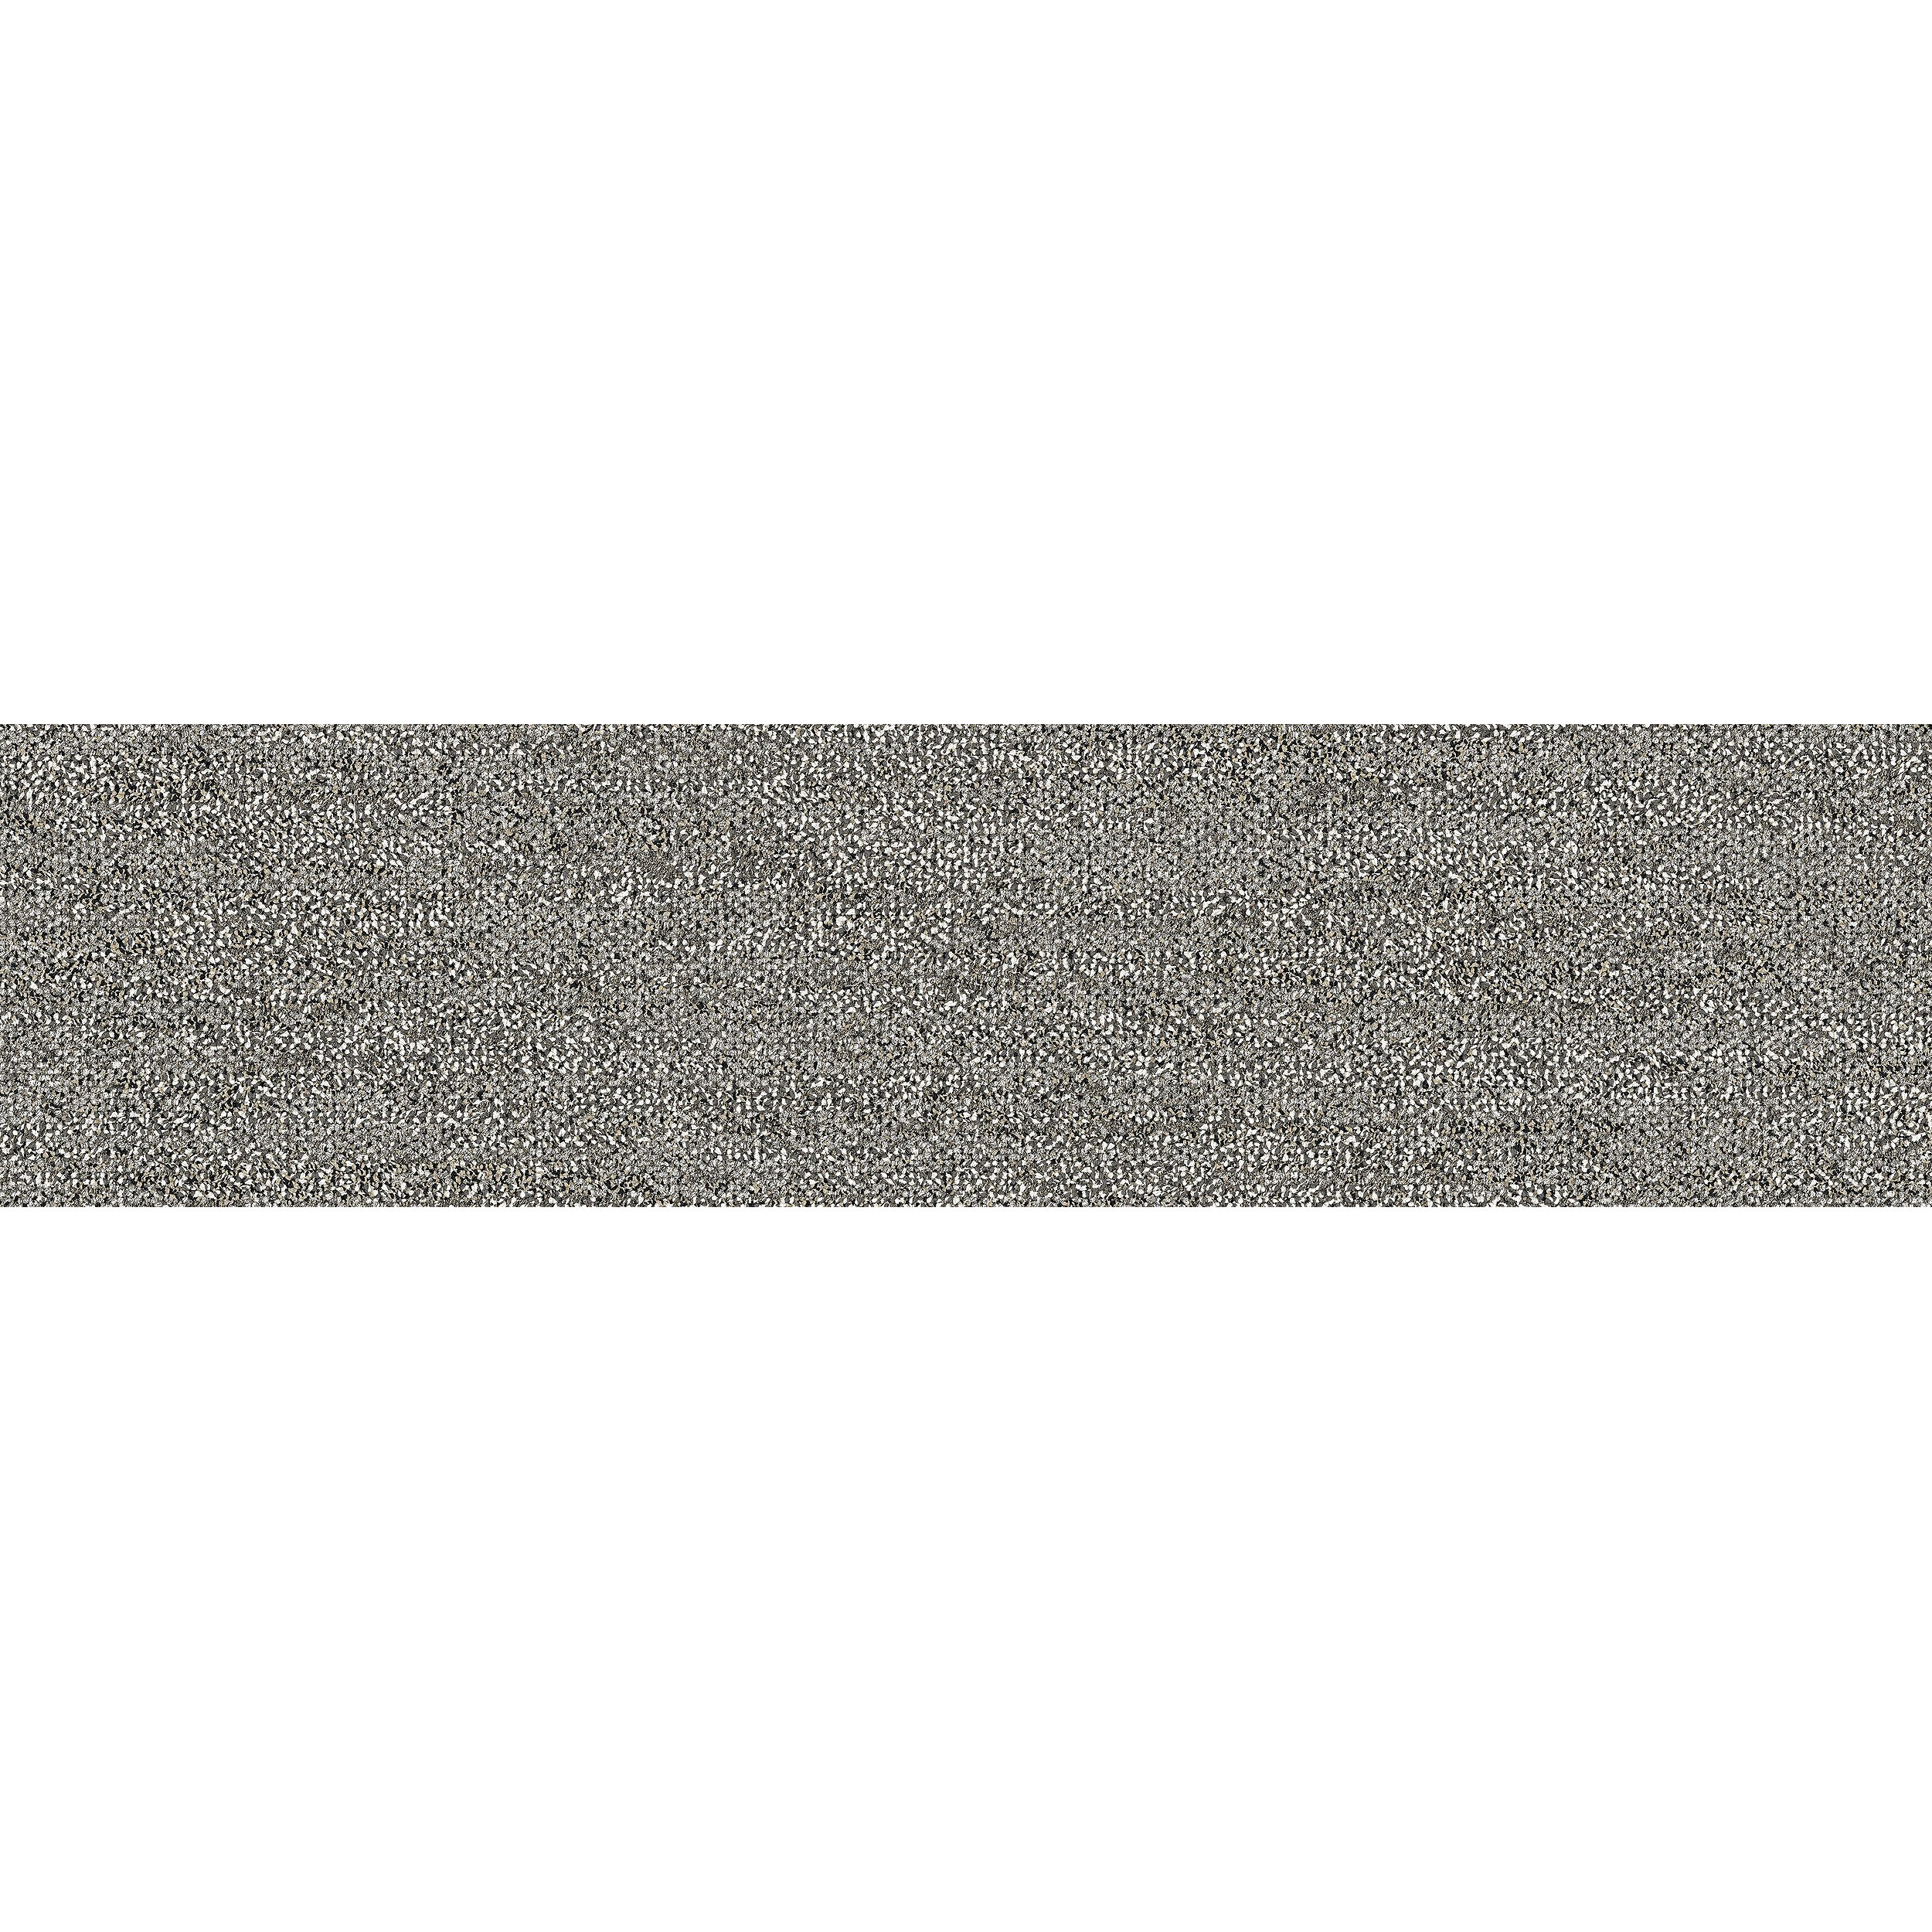 Mantle Rock Carpet Tile In Taupe Stone numéro d’image 7